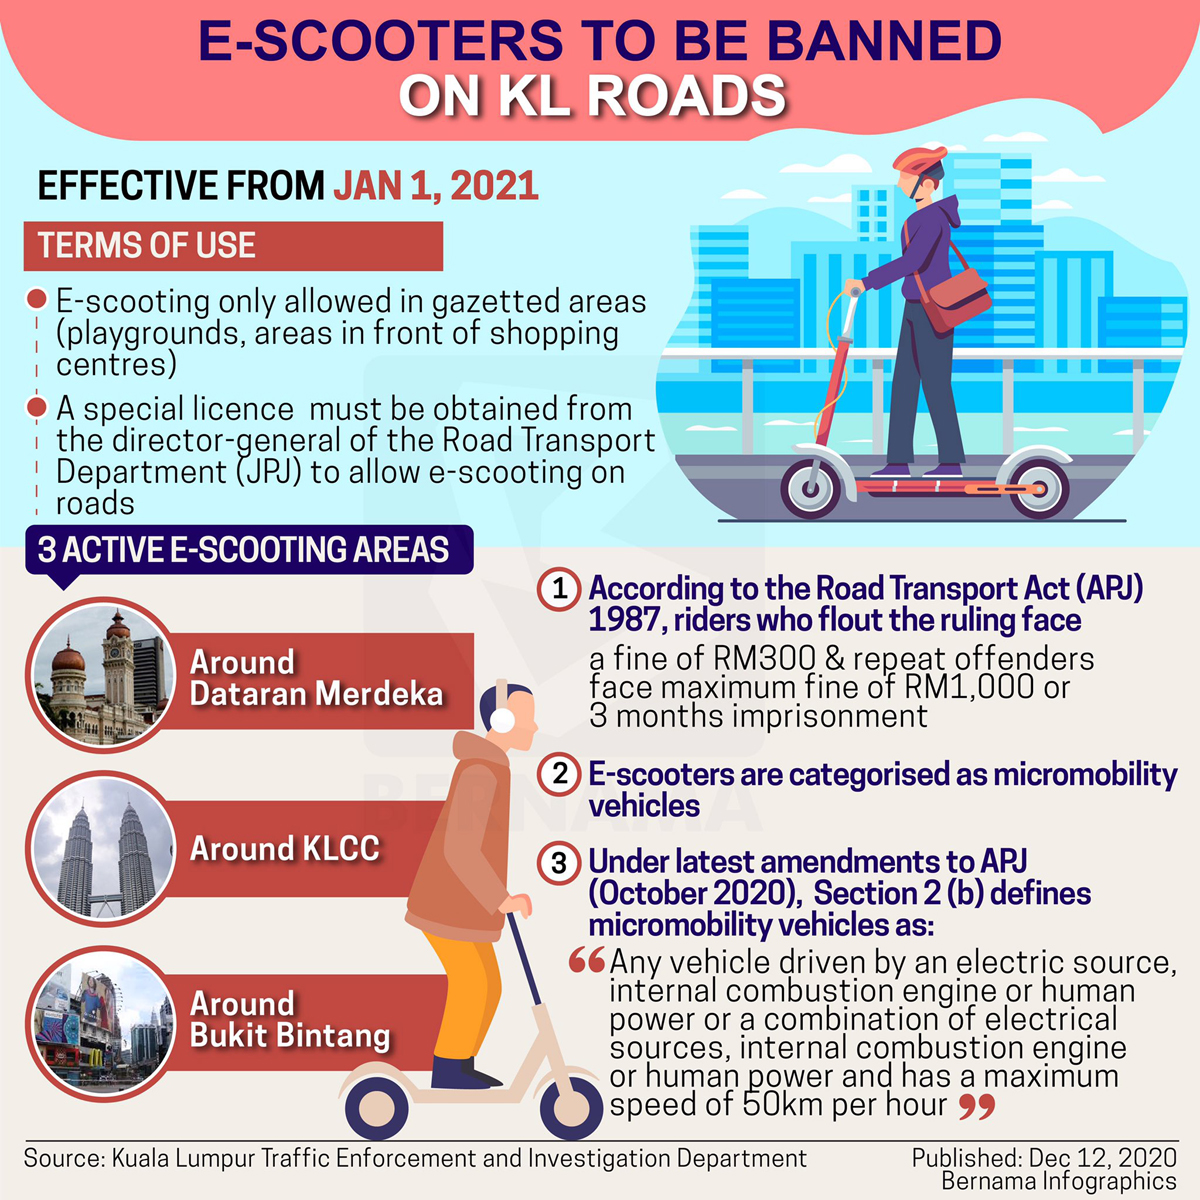 Elektrische scooters worden op 1 januari 2021 van de wegen van Kuala Lumpur verbannen